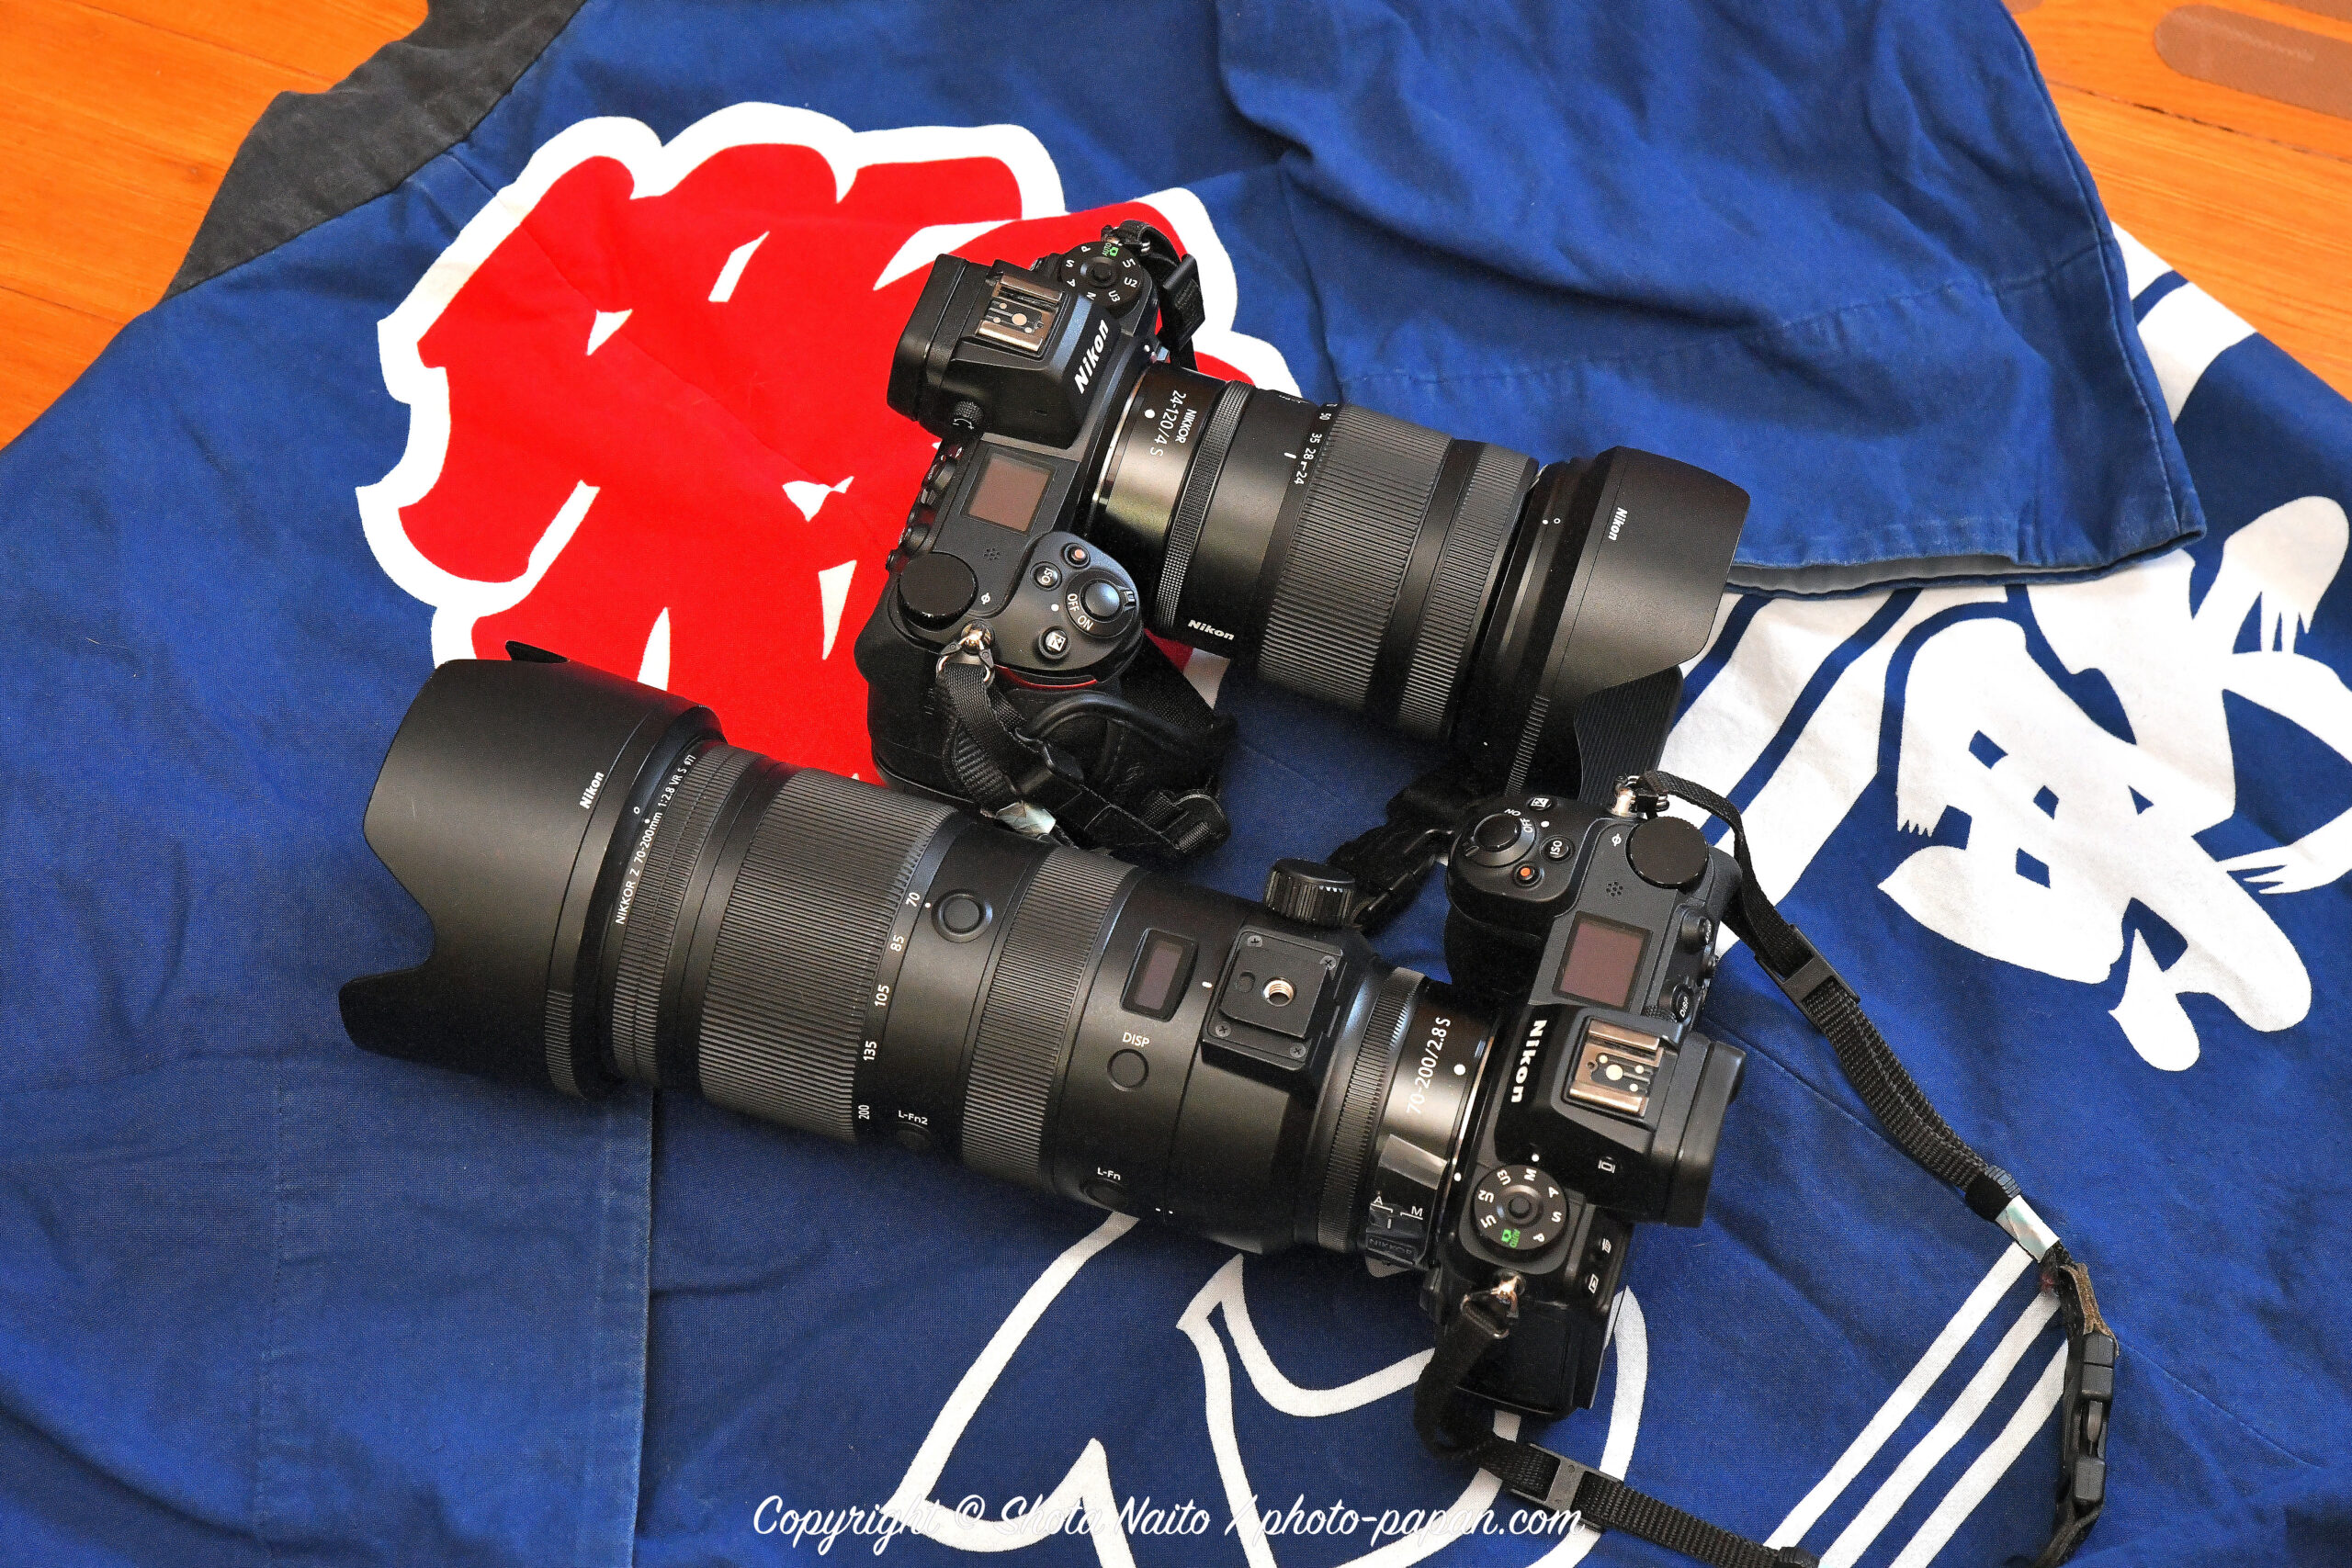 ニコンのミラーレスカメラ Nikon Z6Ⅱ + 標準ズームレンズ 24-120mmと望遠ズームレンズ 70-200mmと、浜松まつりの法被。